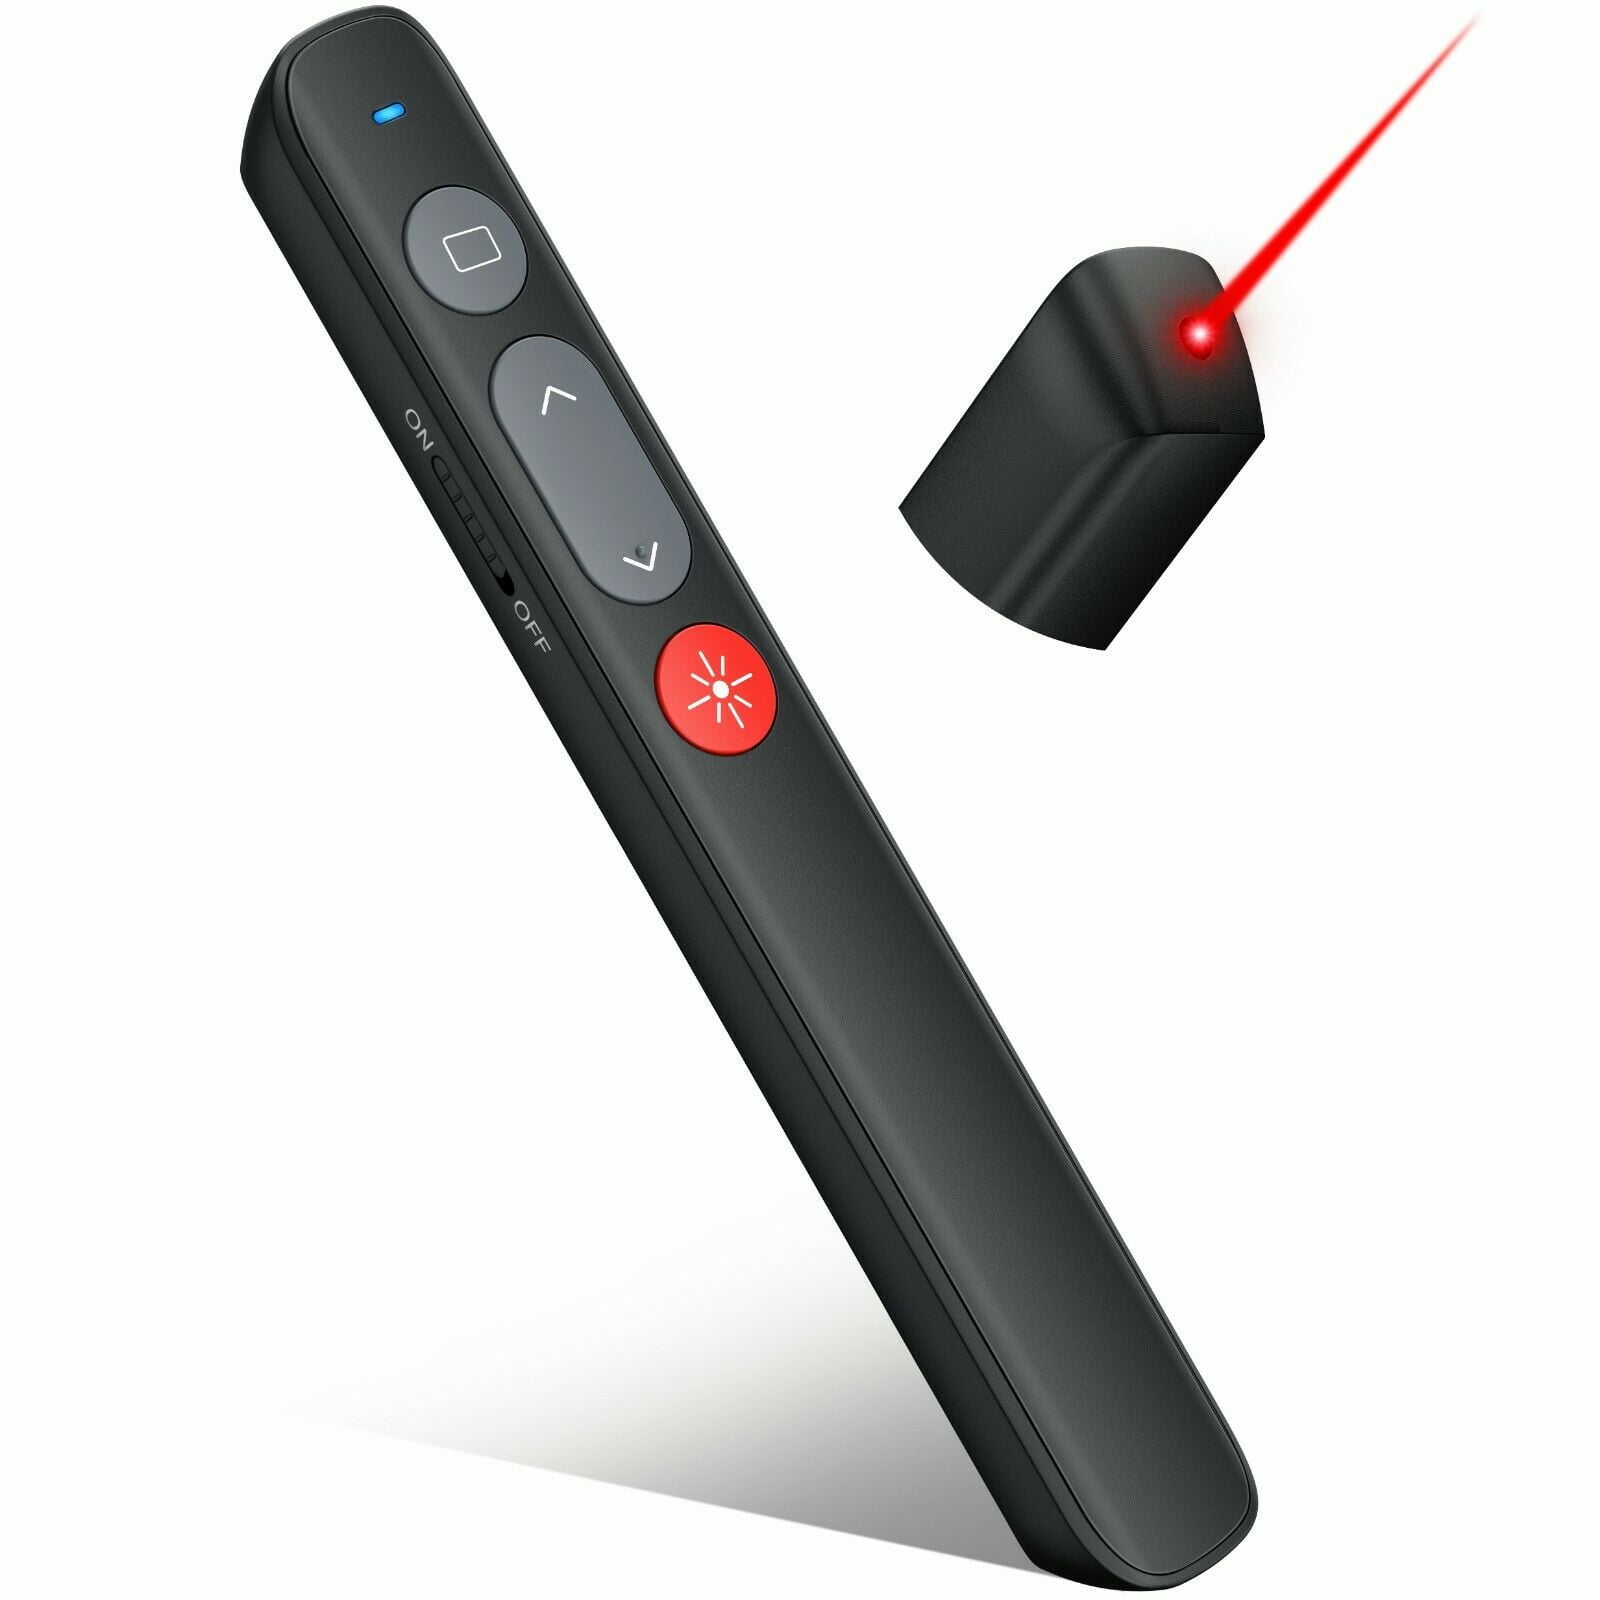 clicker presentation remote control for pc